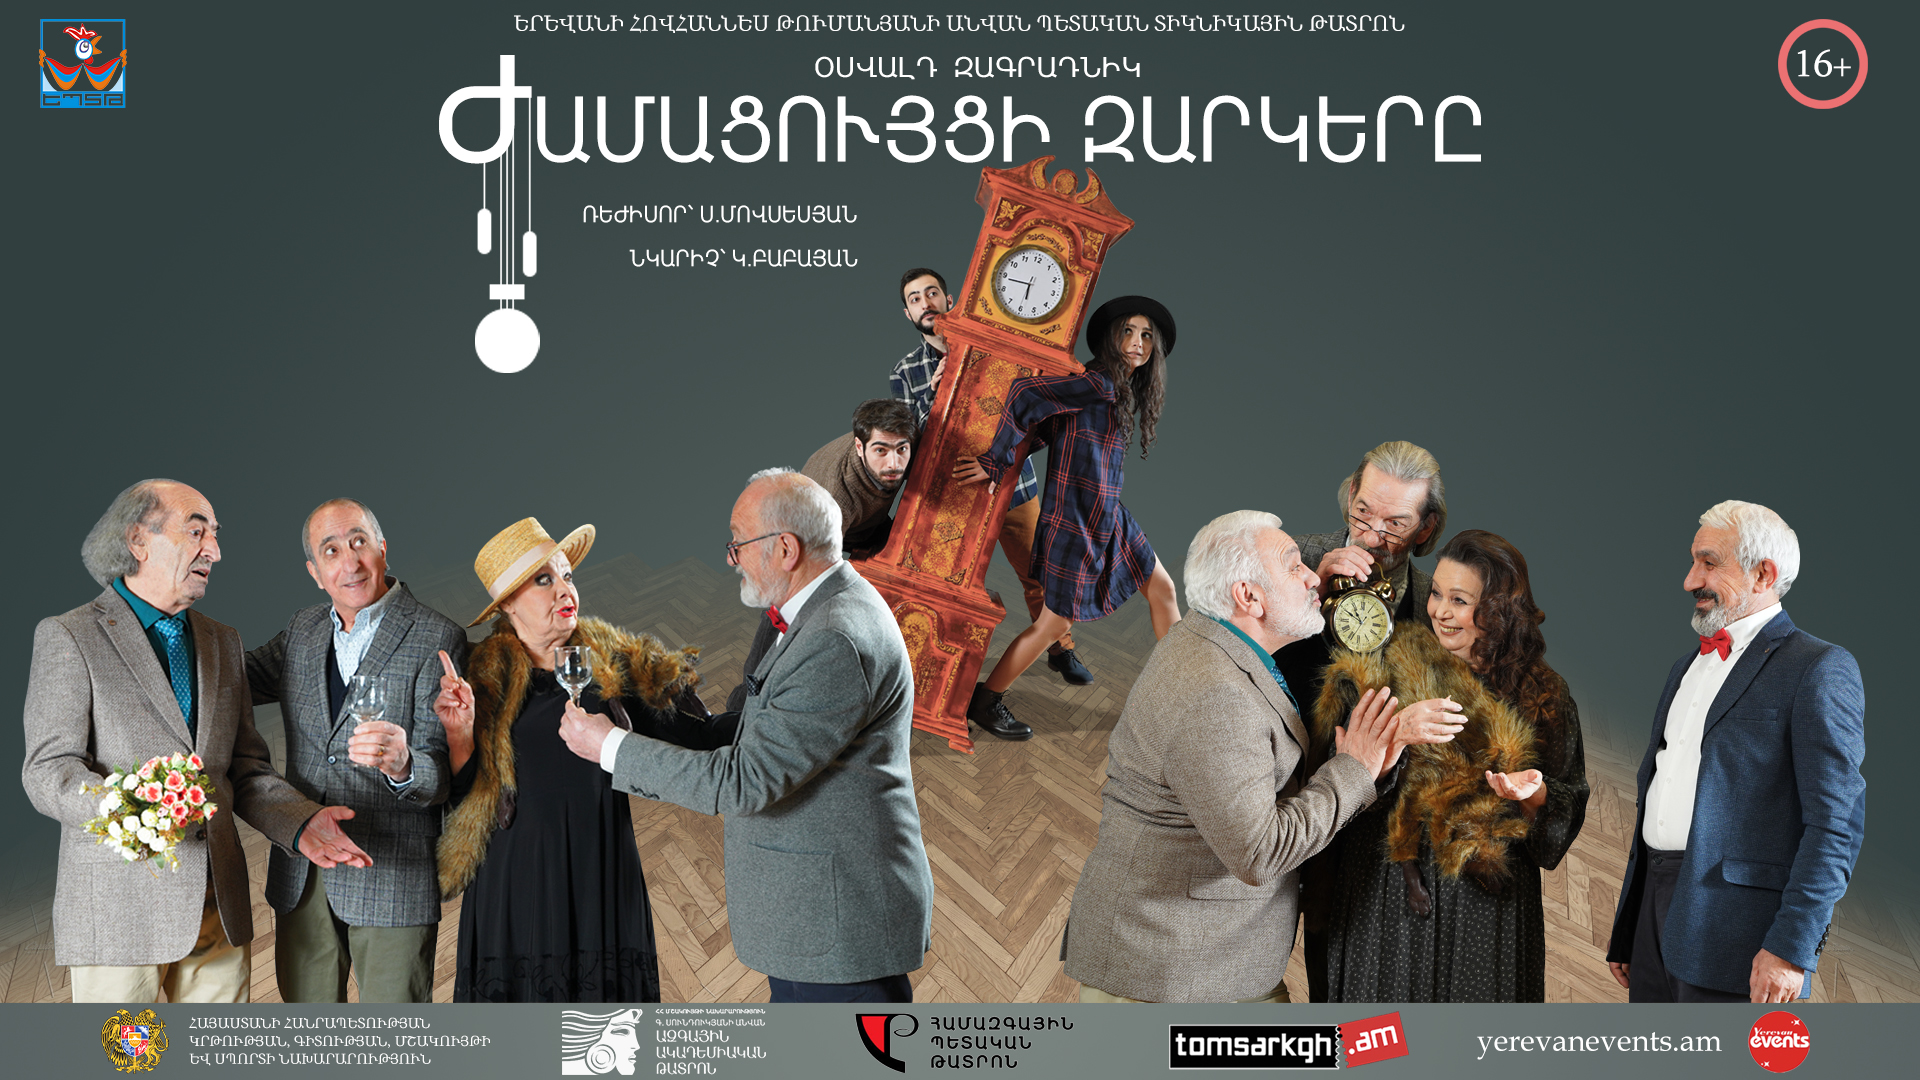 Երևանում սպասվում է «Ժամացույցի զարկերը» ըստ Օսվալդ Զագրադնիկի ներկայացման պրեմիերան